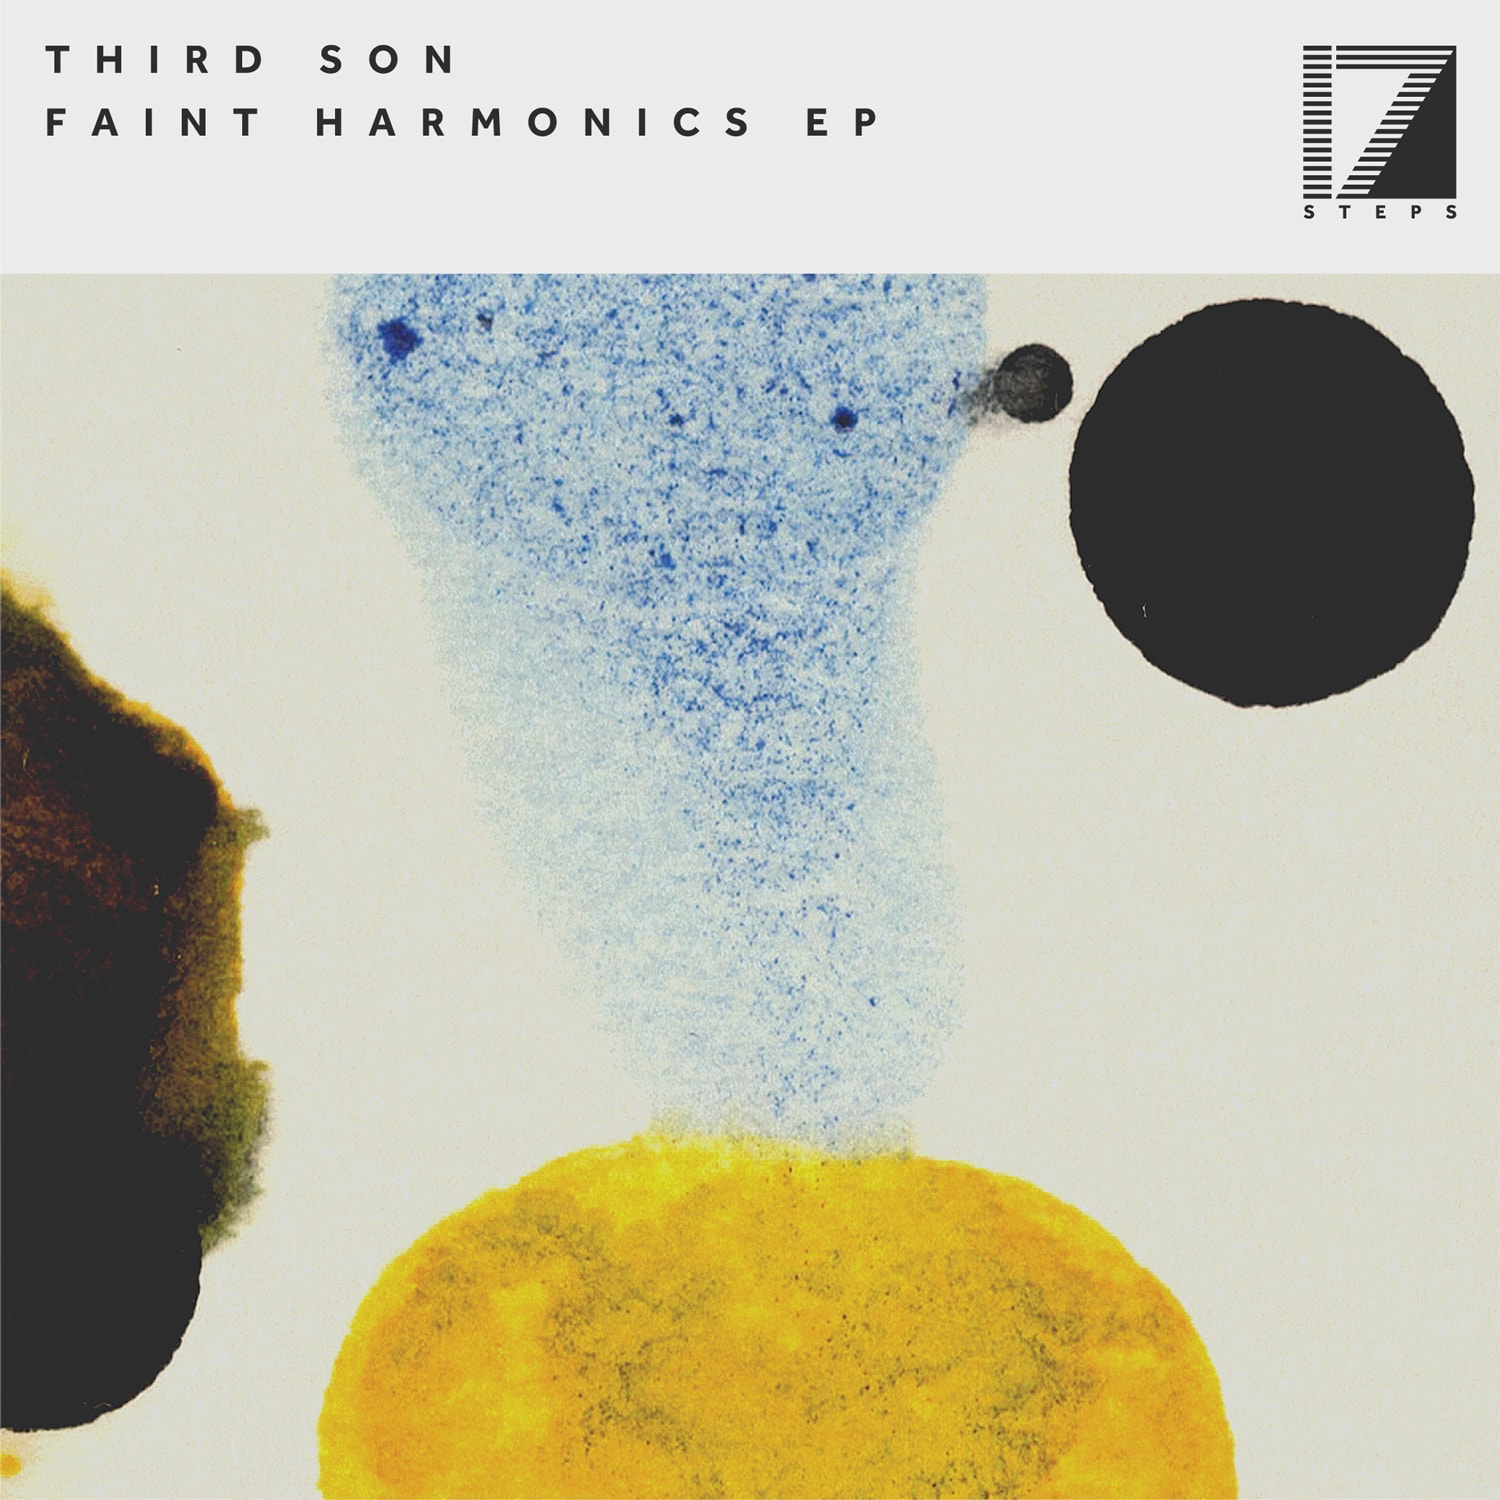 THIRD SON – FAINT HARMONICS EP